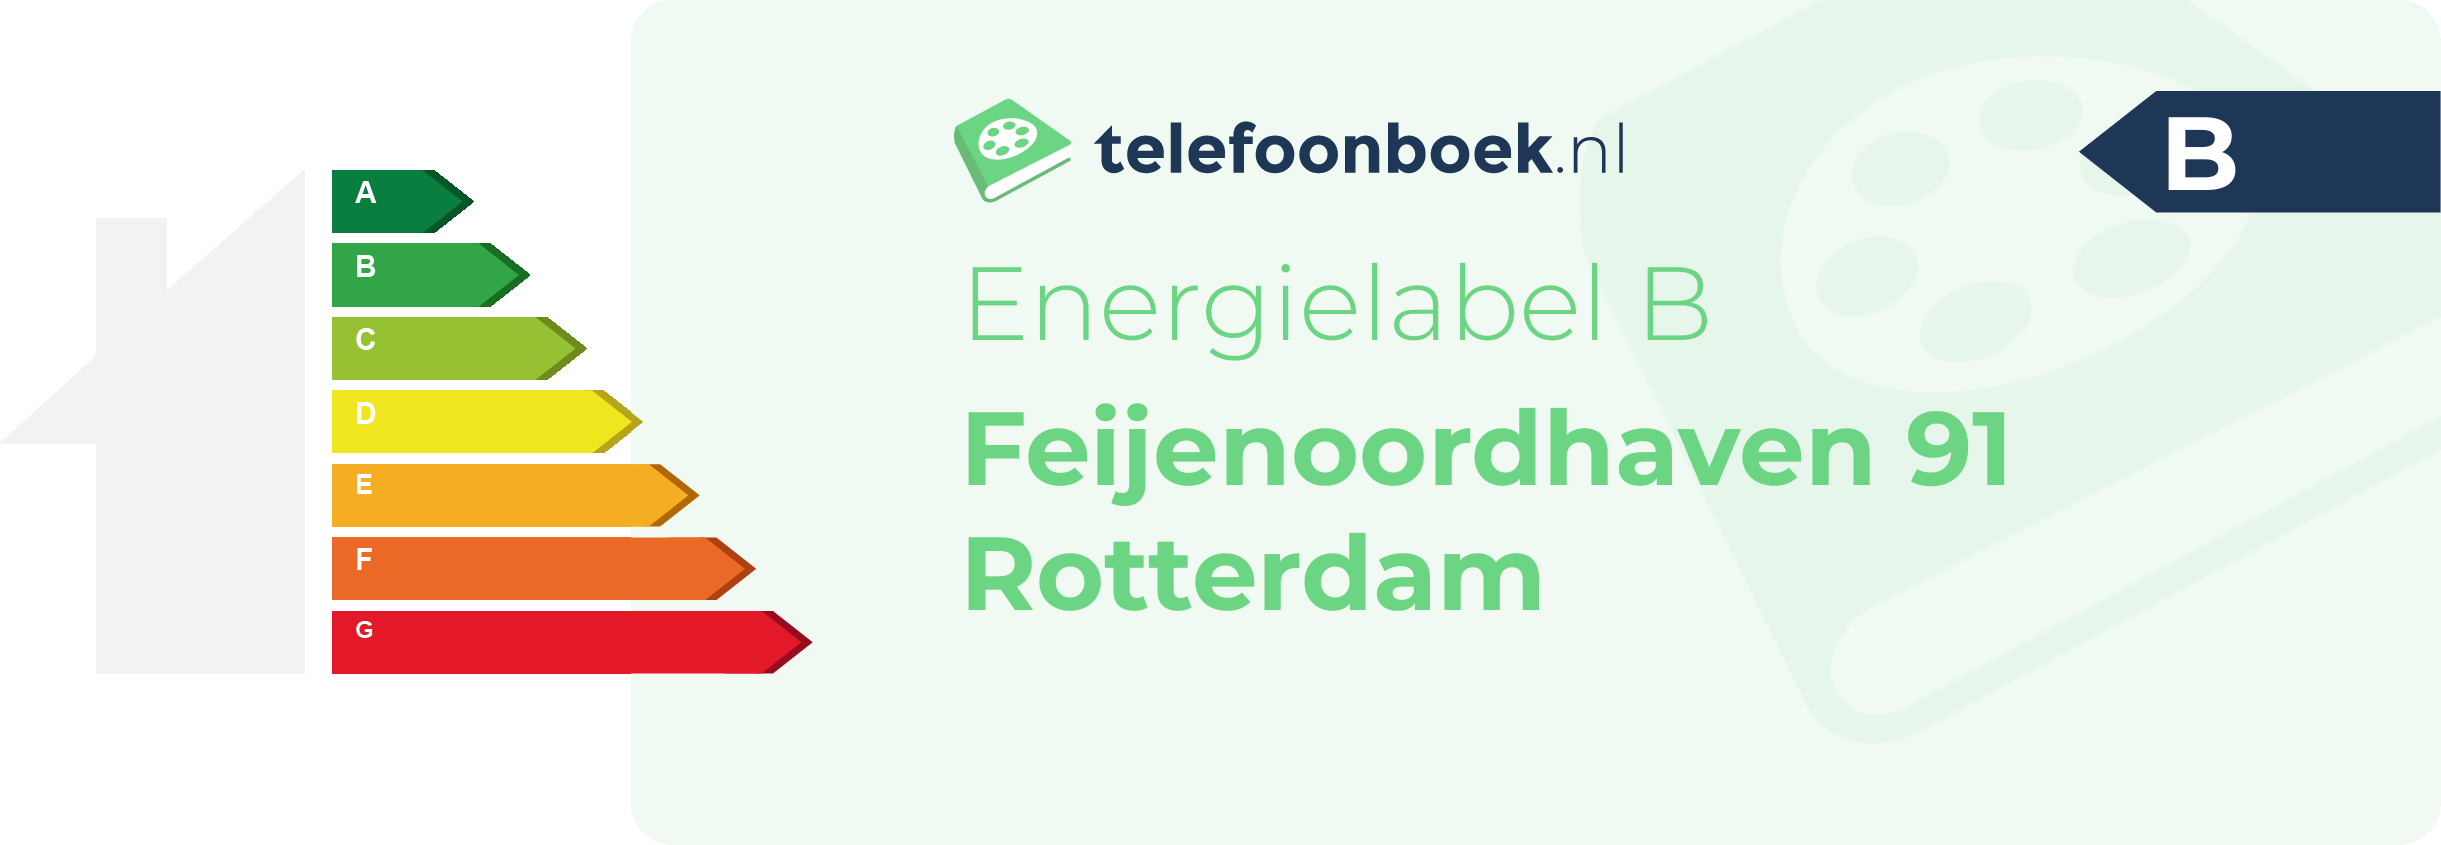 Energielabel Feijenoordhaven 91 Rotterdam